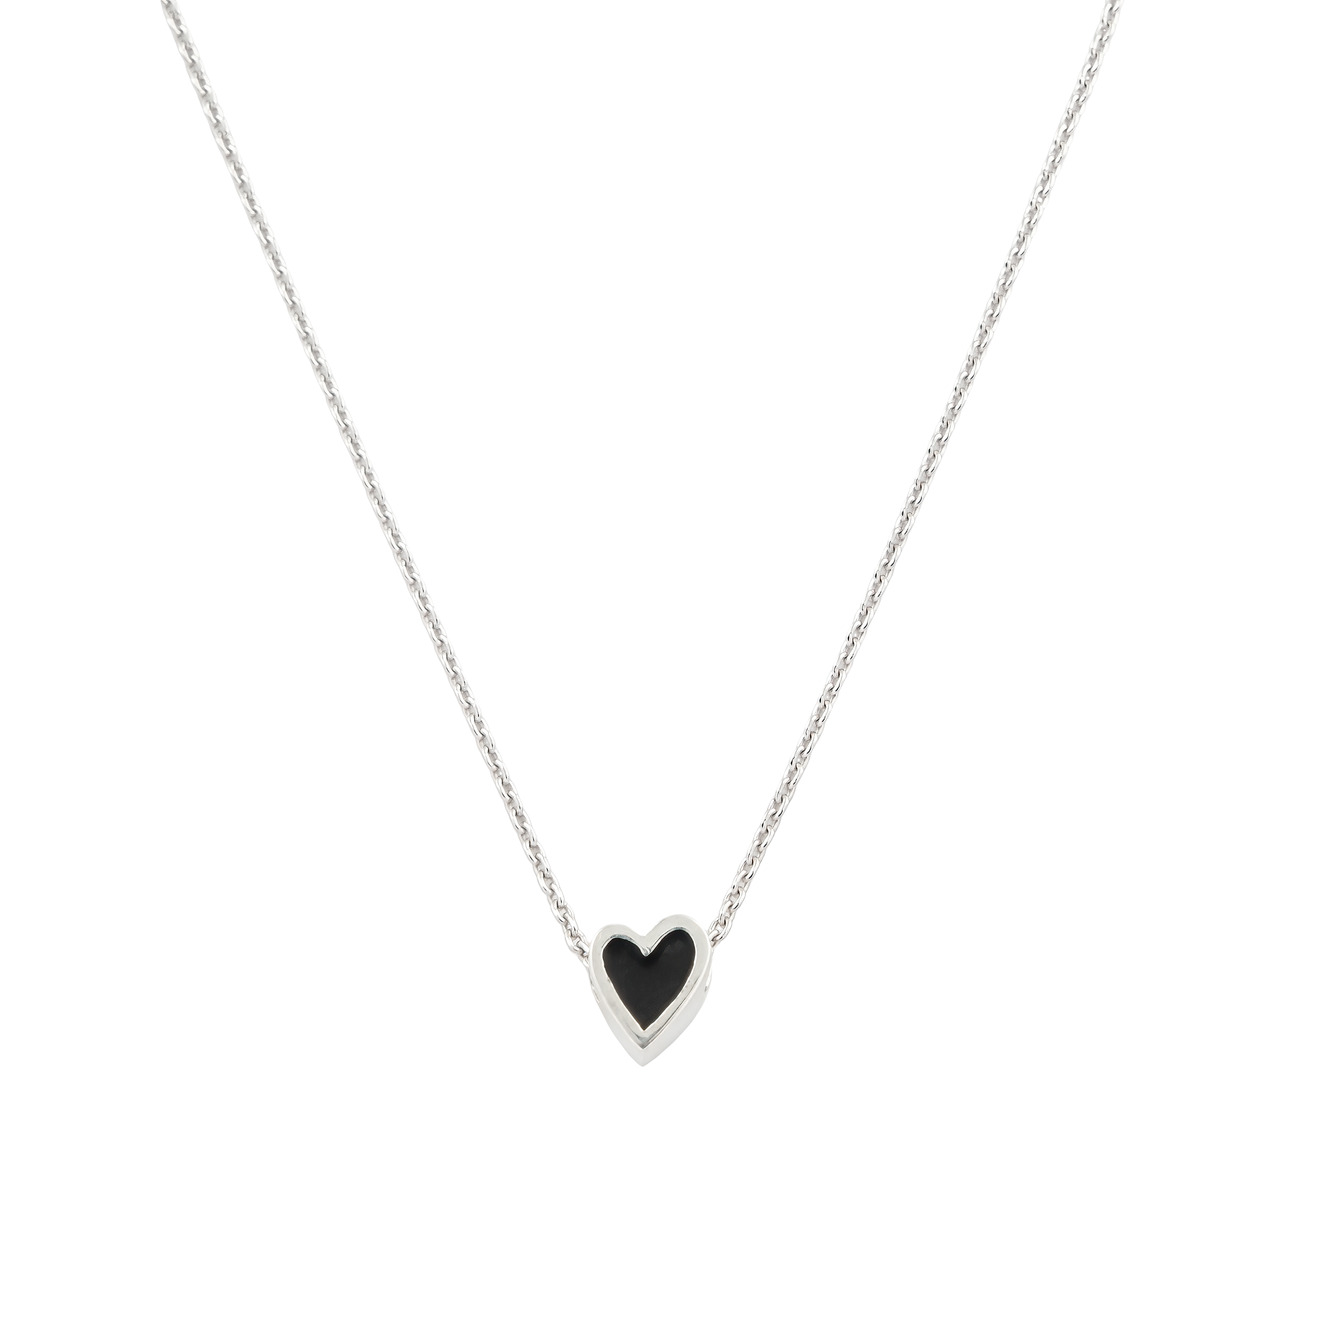 УРА jewelry подвеска сердца из серебра на цепочке с черной эмалью